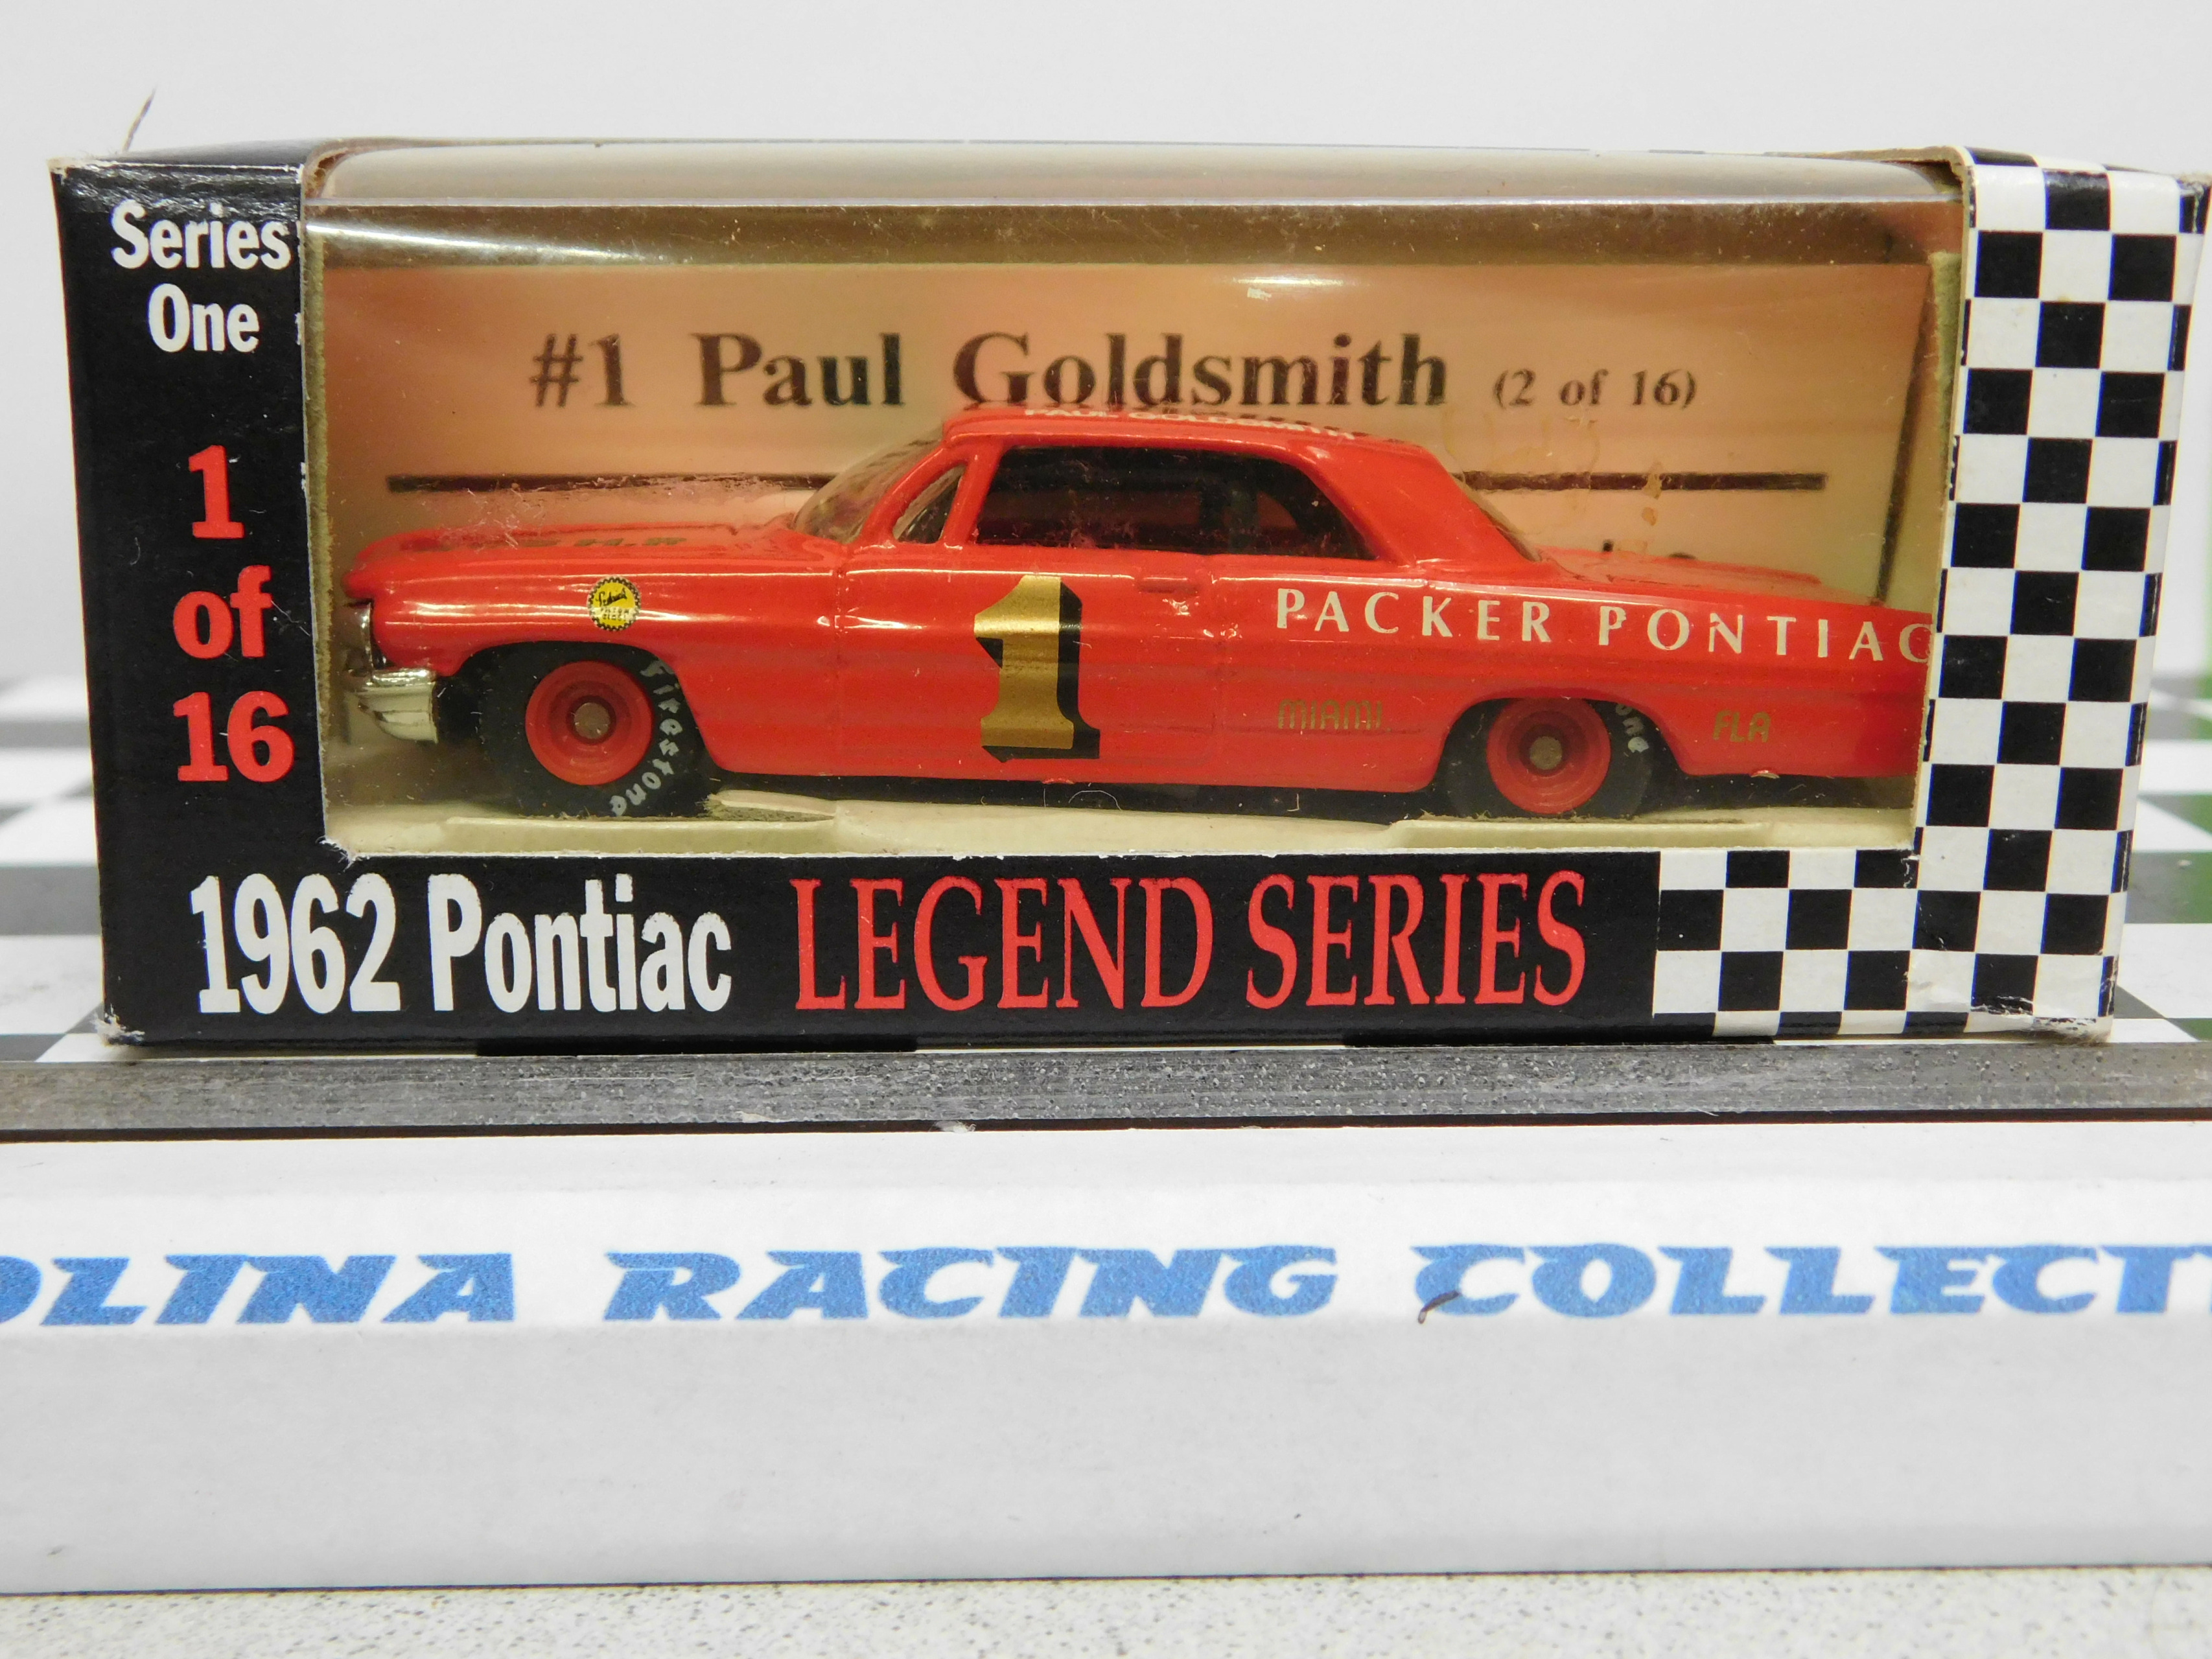 Paul Goldsmith 1/64 #1 Packer Pontiac 1962 Pontiac